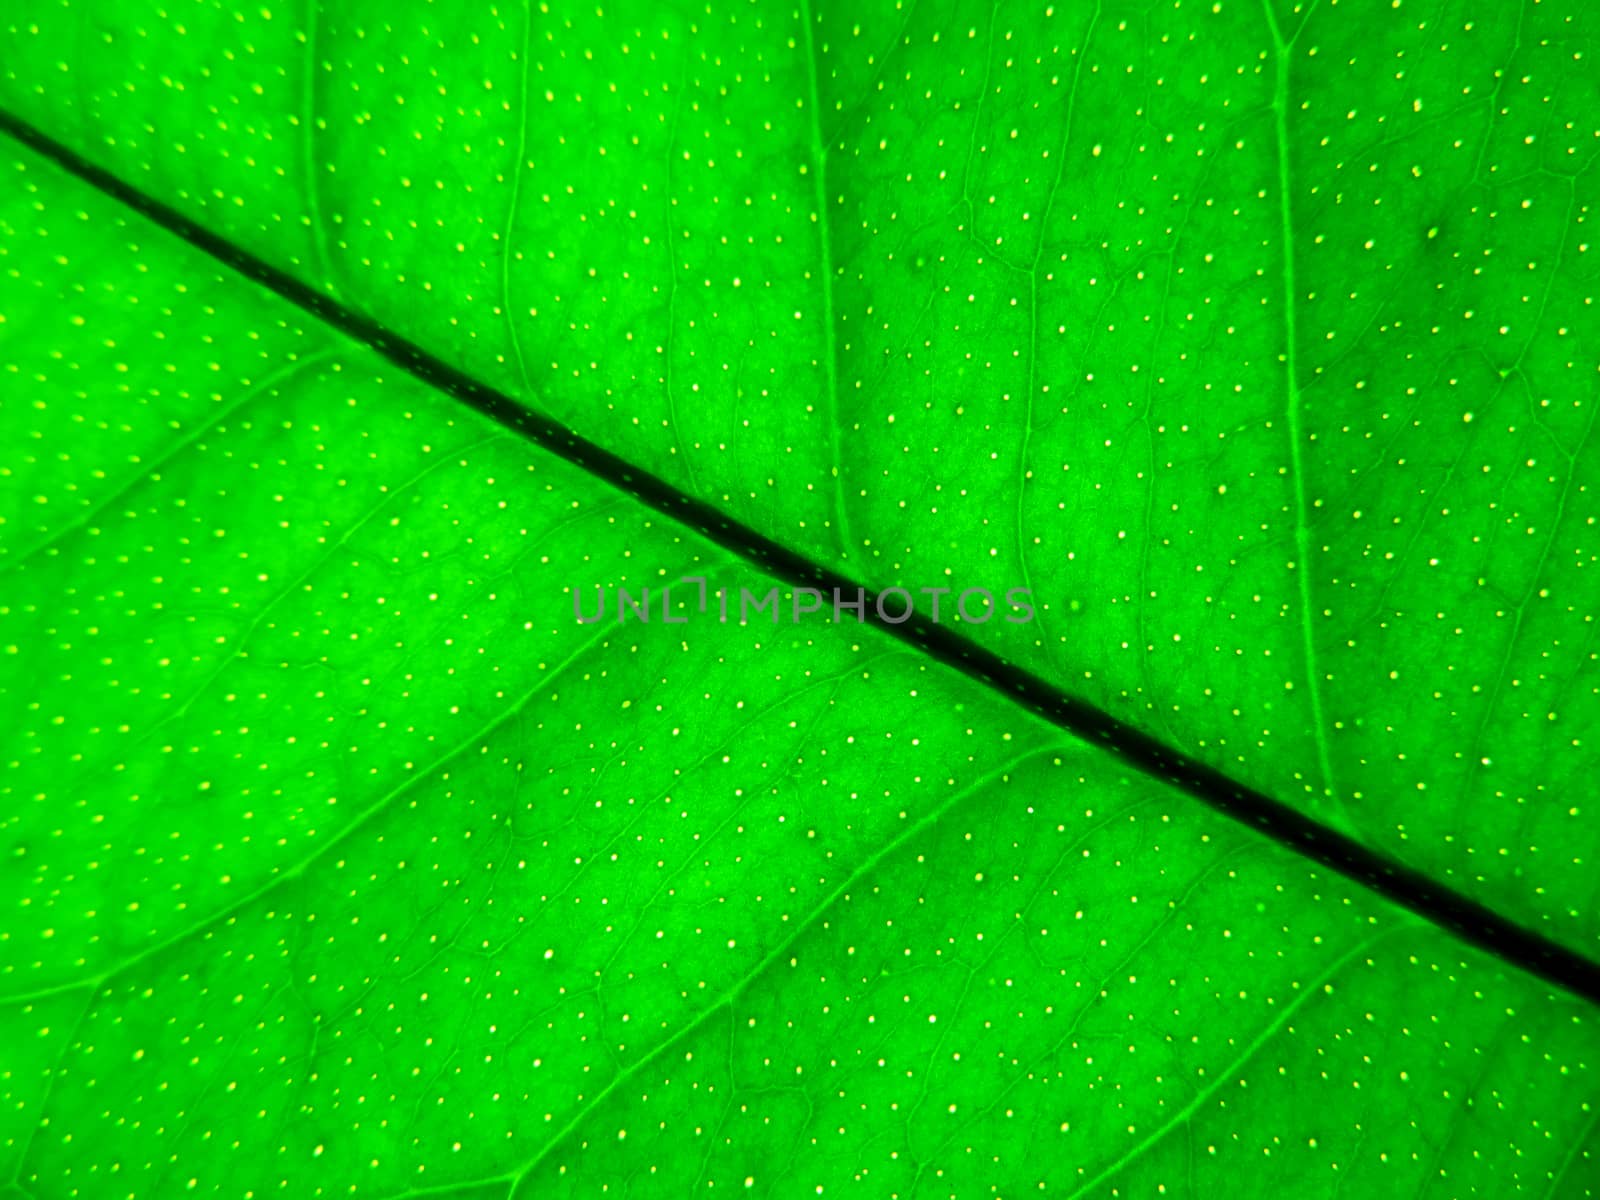 Green lemon leaf background by Venakr